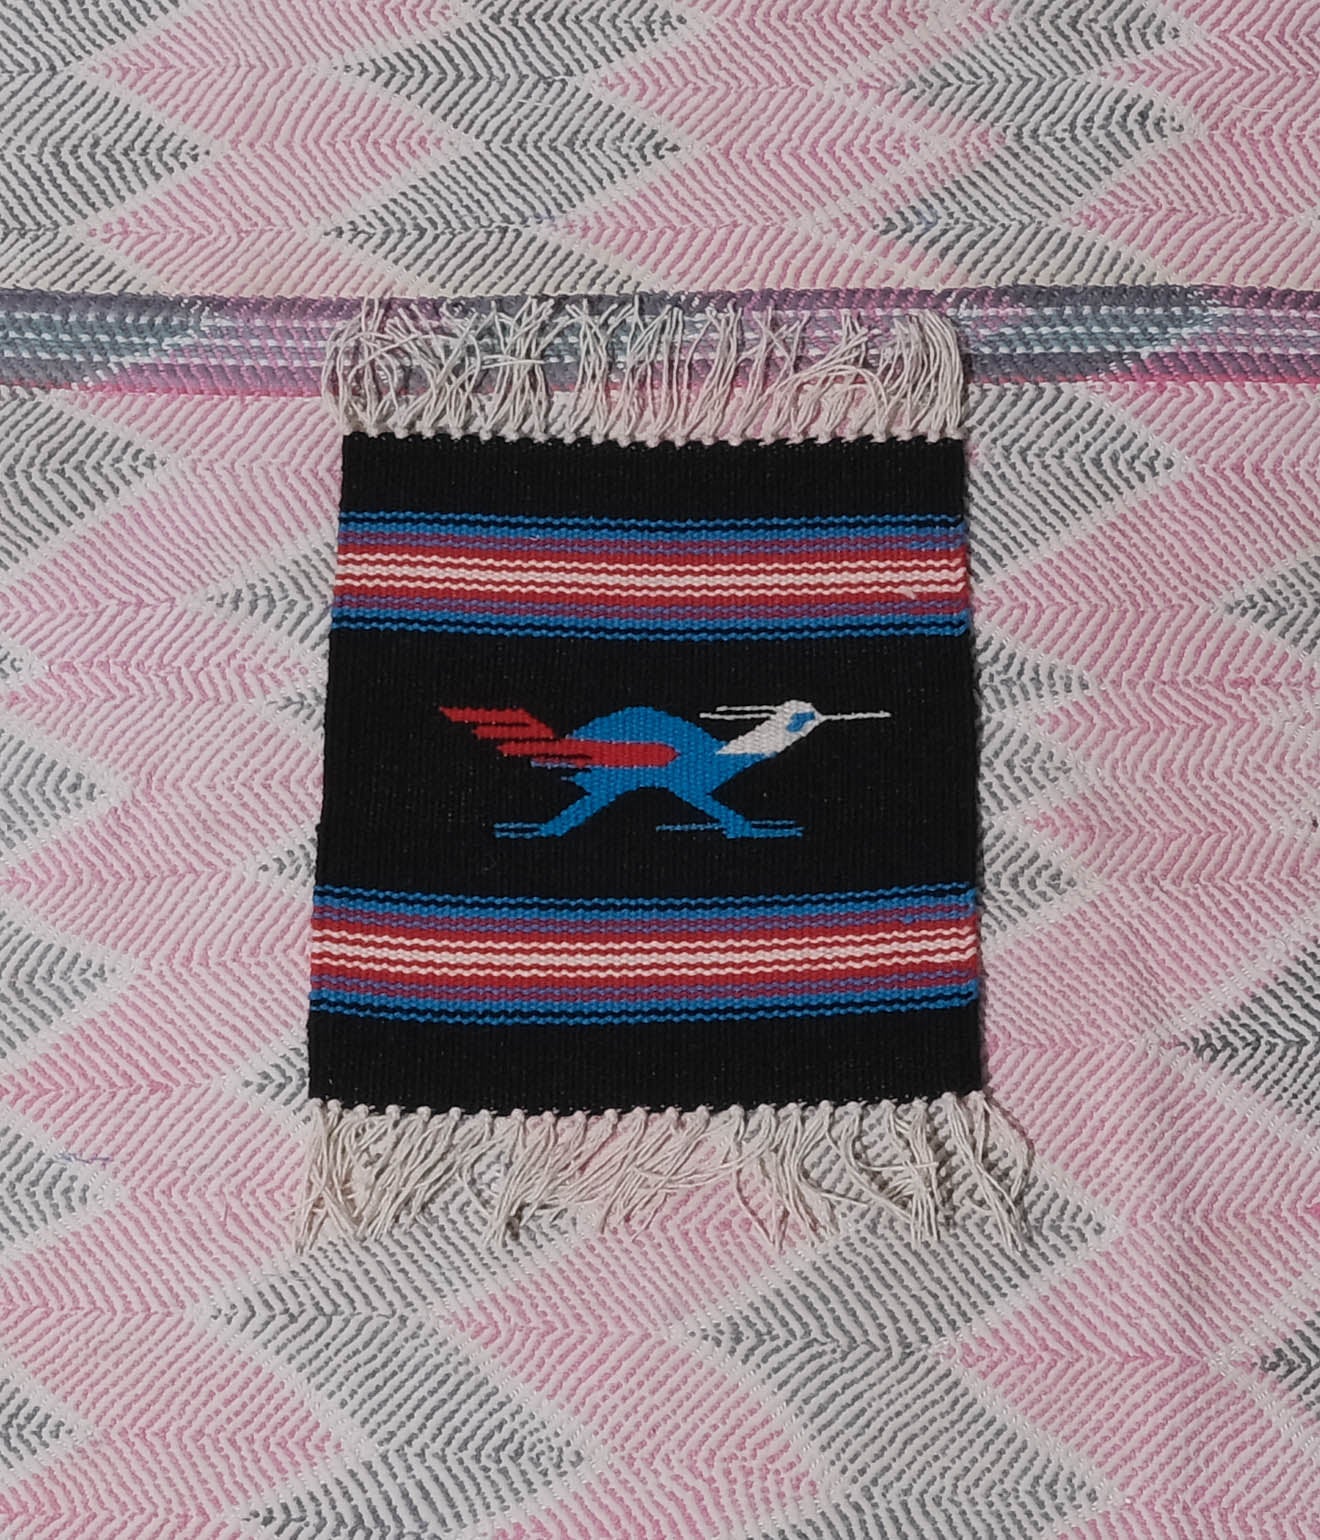 ORTEGA'S "Chimayo Small Rag"